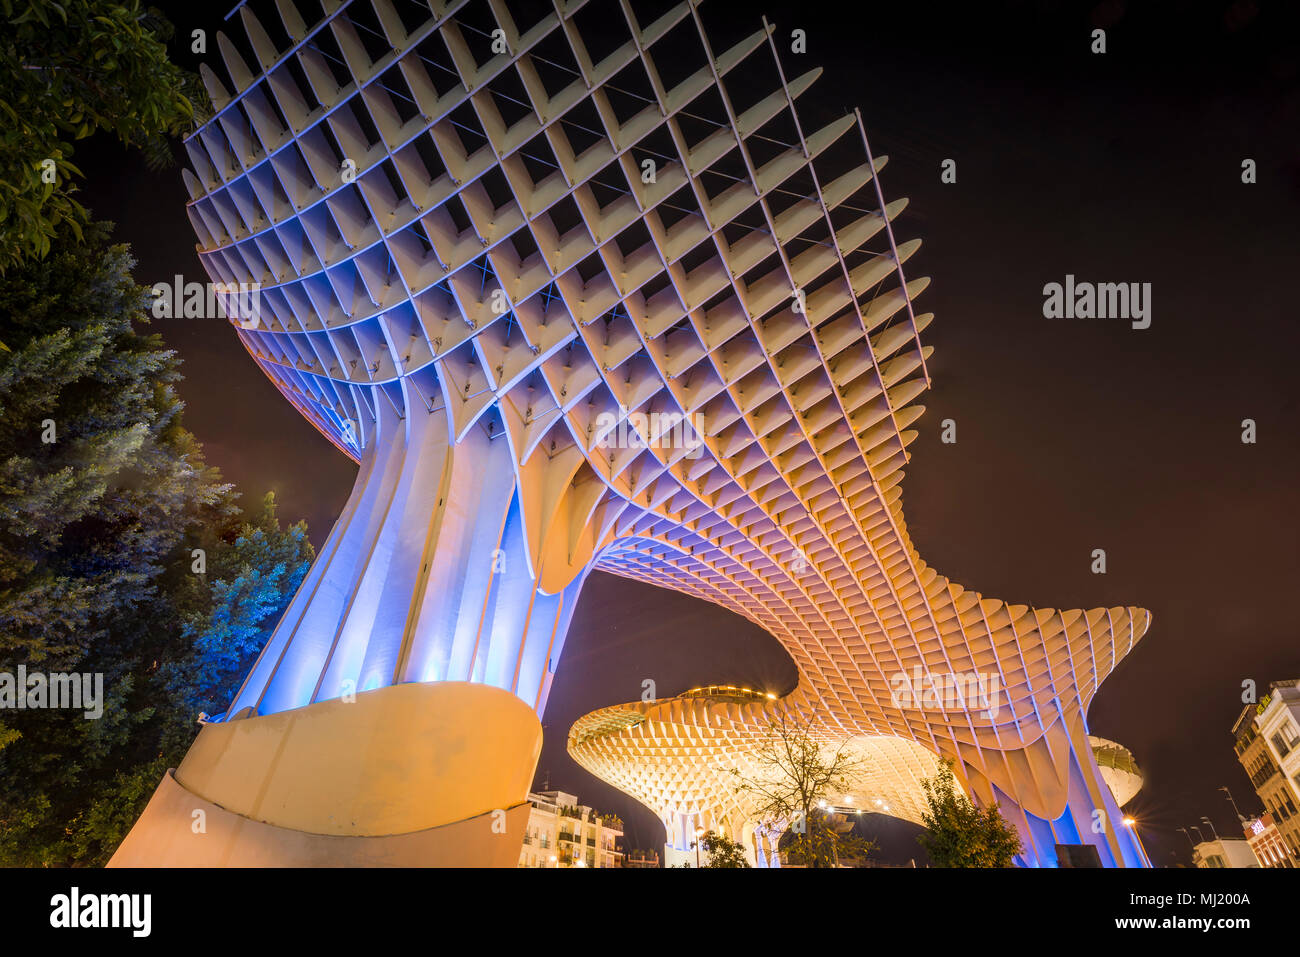 L'architecture moderne, structure en bois Metropol Parasol, illuminé la nuit, Plaza de la Encarnacion, Séville, Andalousie, Espagne Banque D'Images